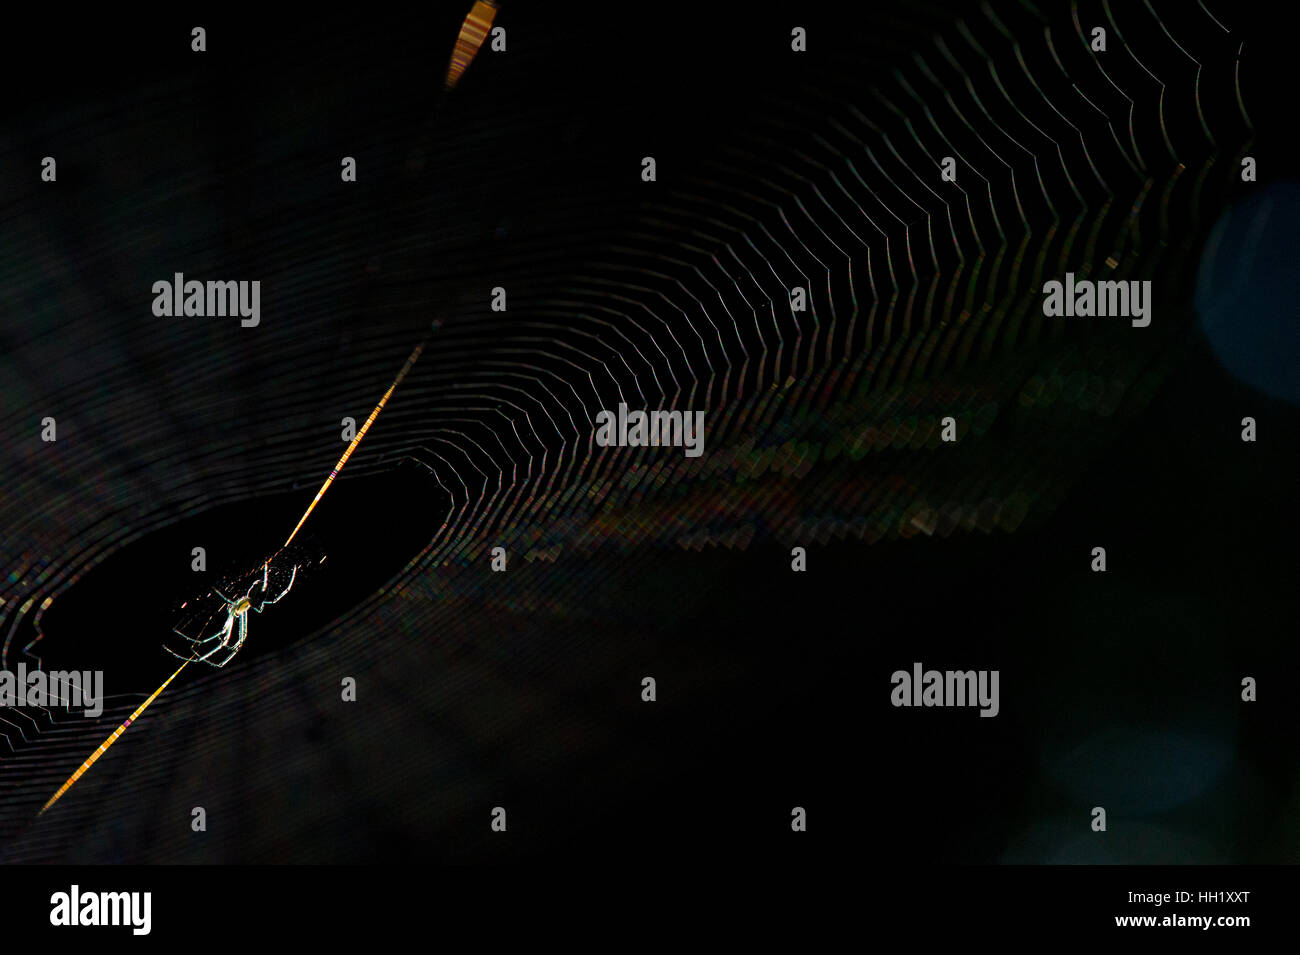 Eine Obstgarten Orbweaver Spinne sitzt auf ihr Netz vor einem schwarzen Hintergrund Stockfoto